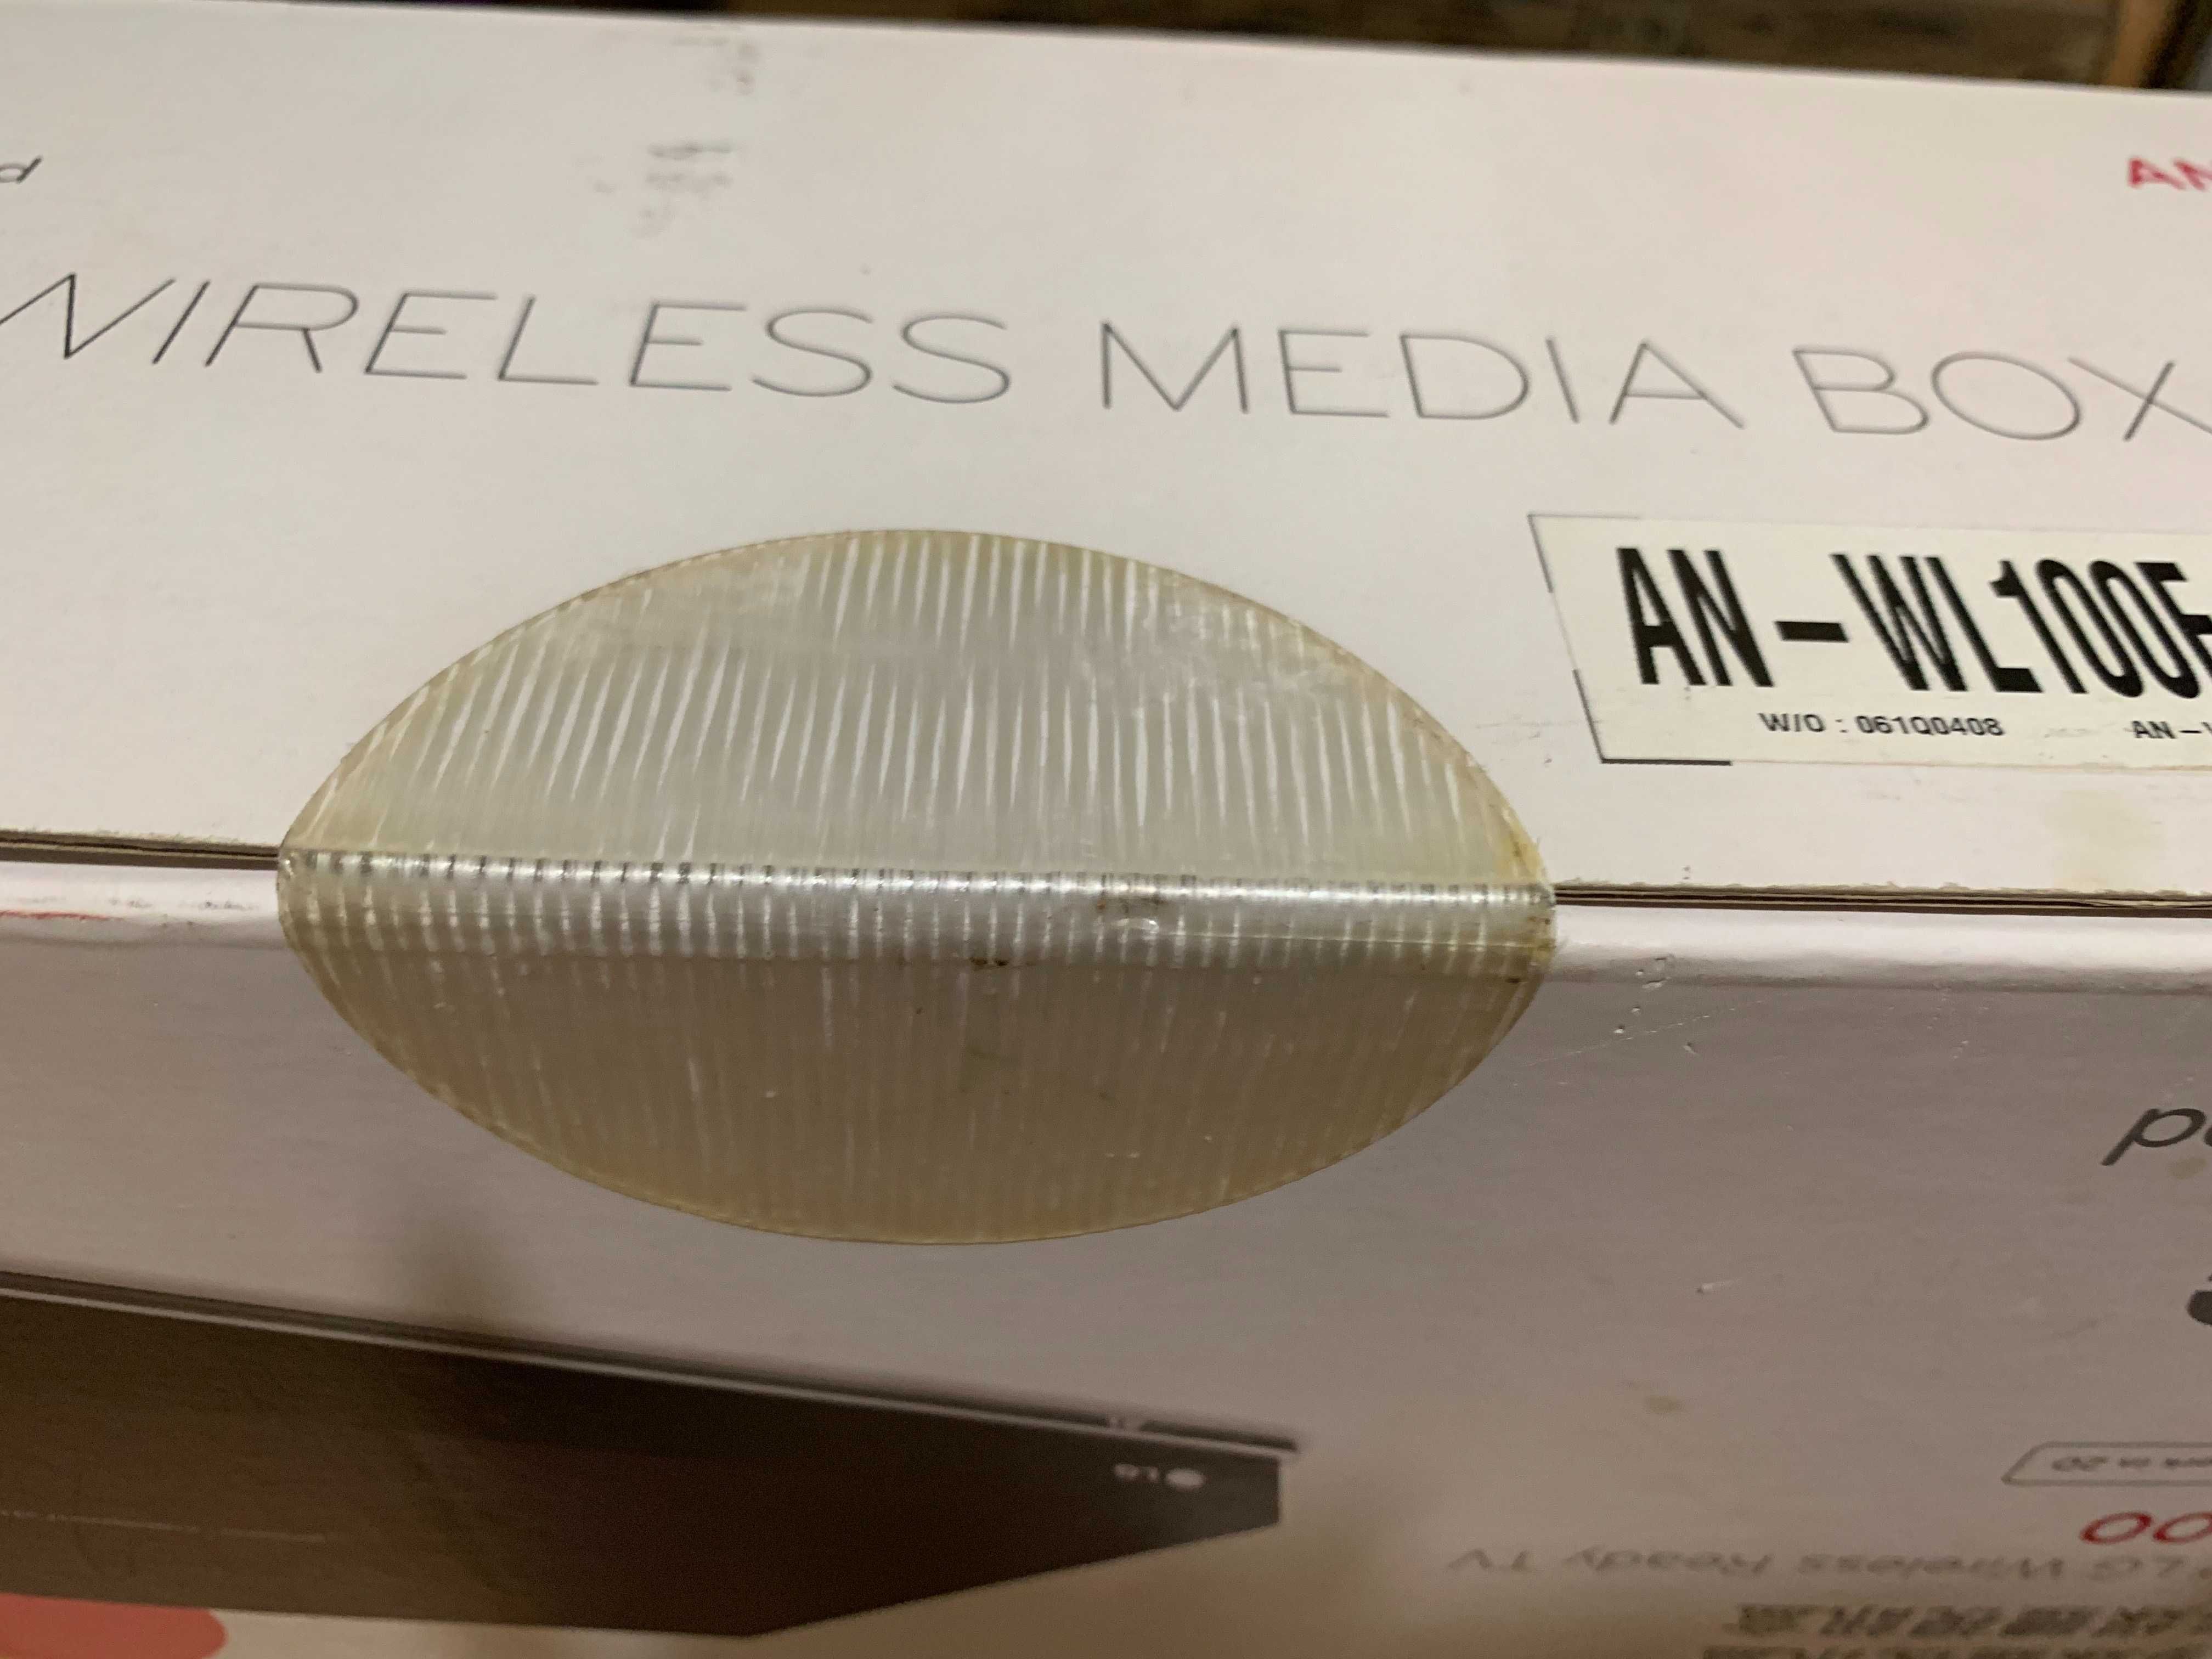 Беспроводной проигрыватель мультимедиа LG Wireless Media Box AN-WL100